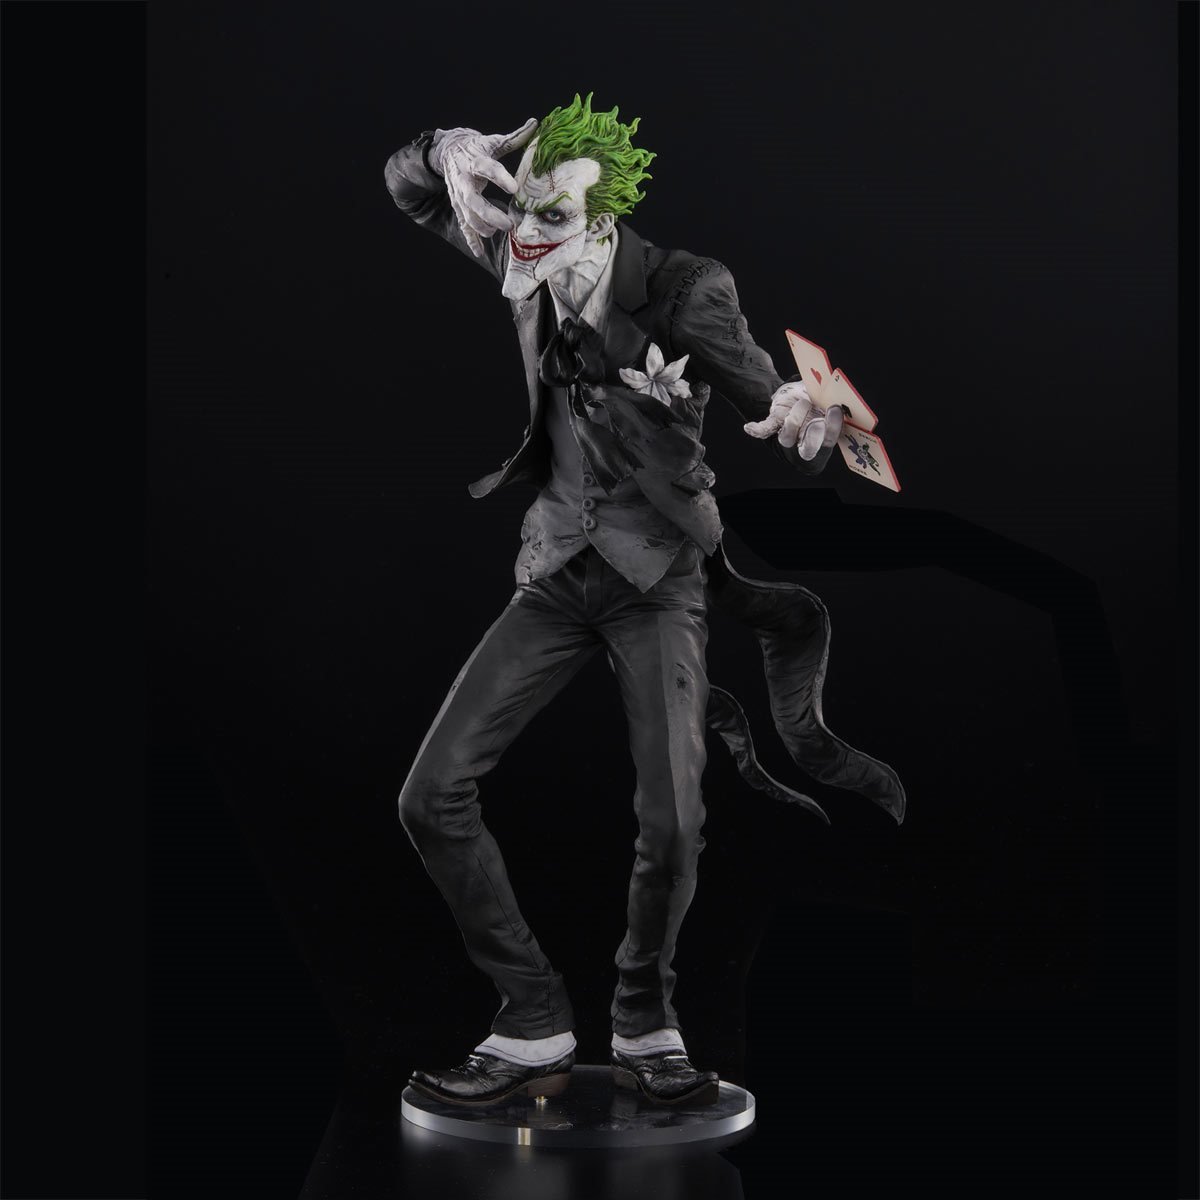 DC Funko POP! Heroes The Joker Vinyl Figure [Black Suit] 